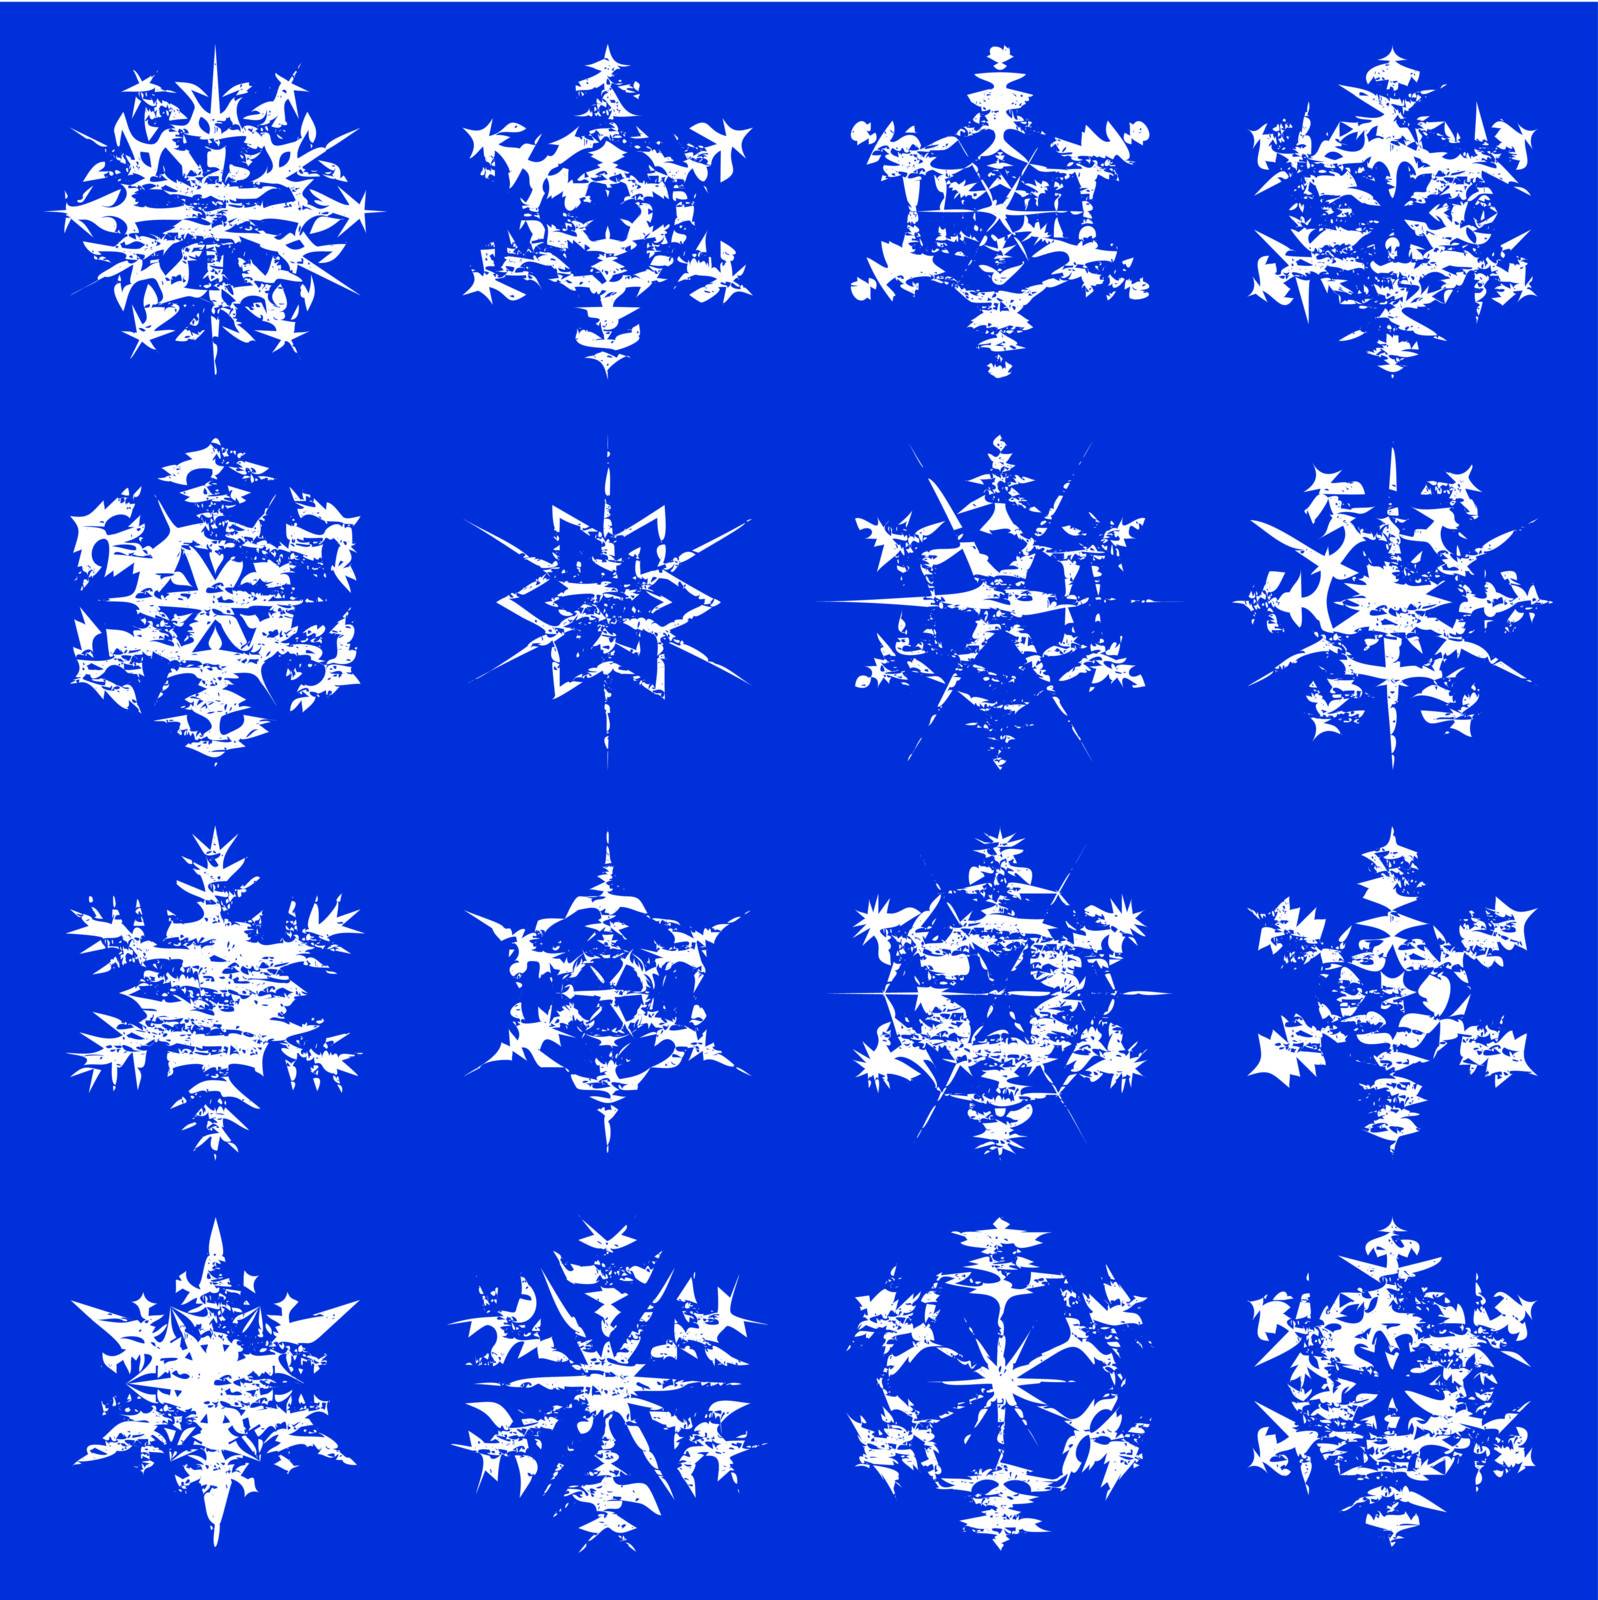 Grungy Snowflakes by eyematrix